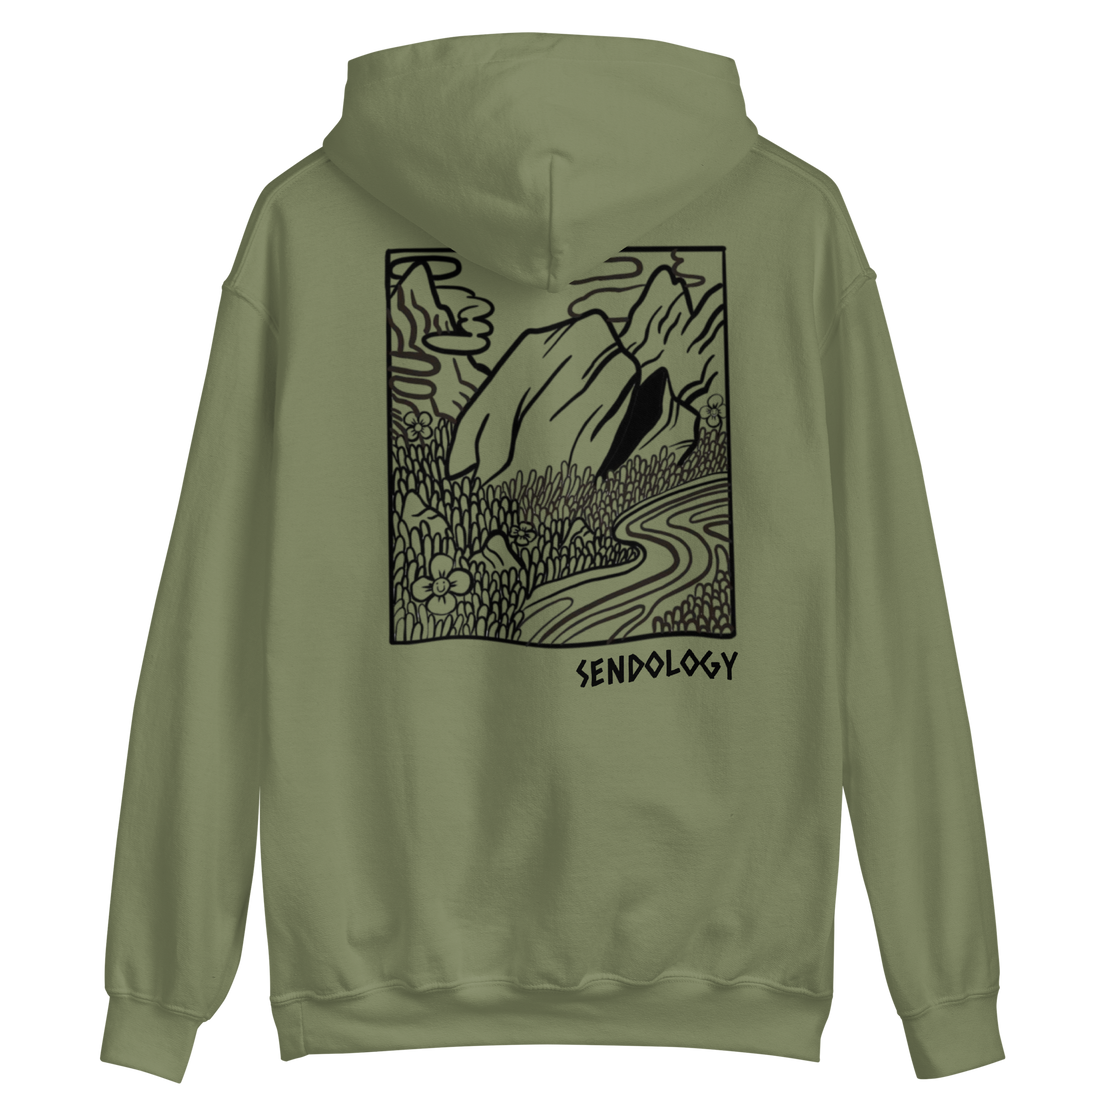 “Boulder valley” hoodie